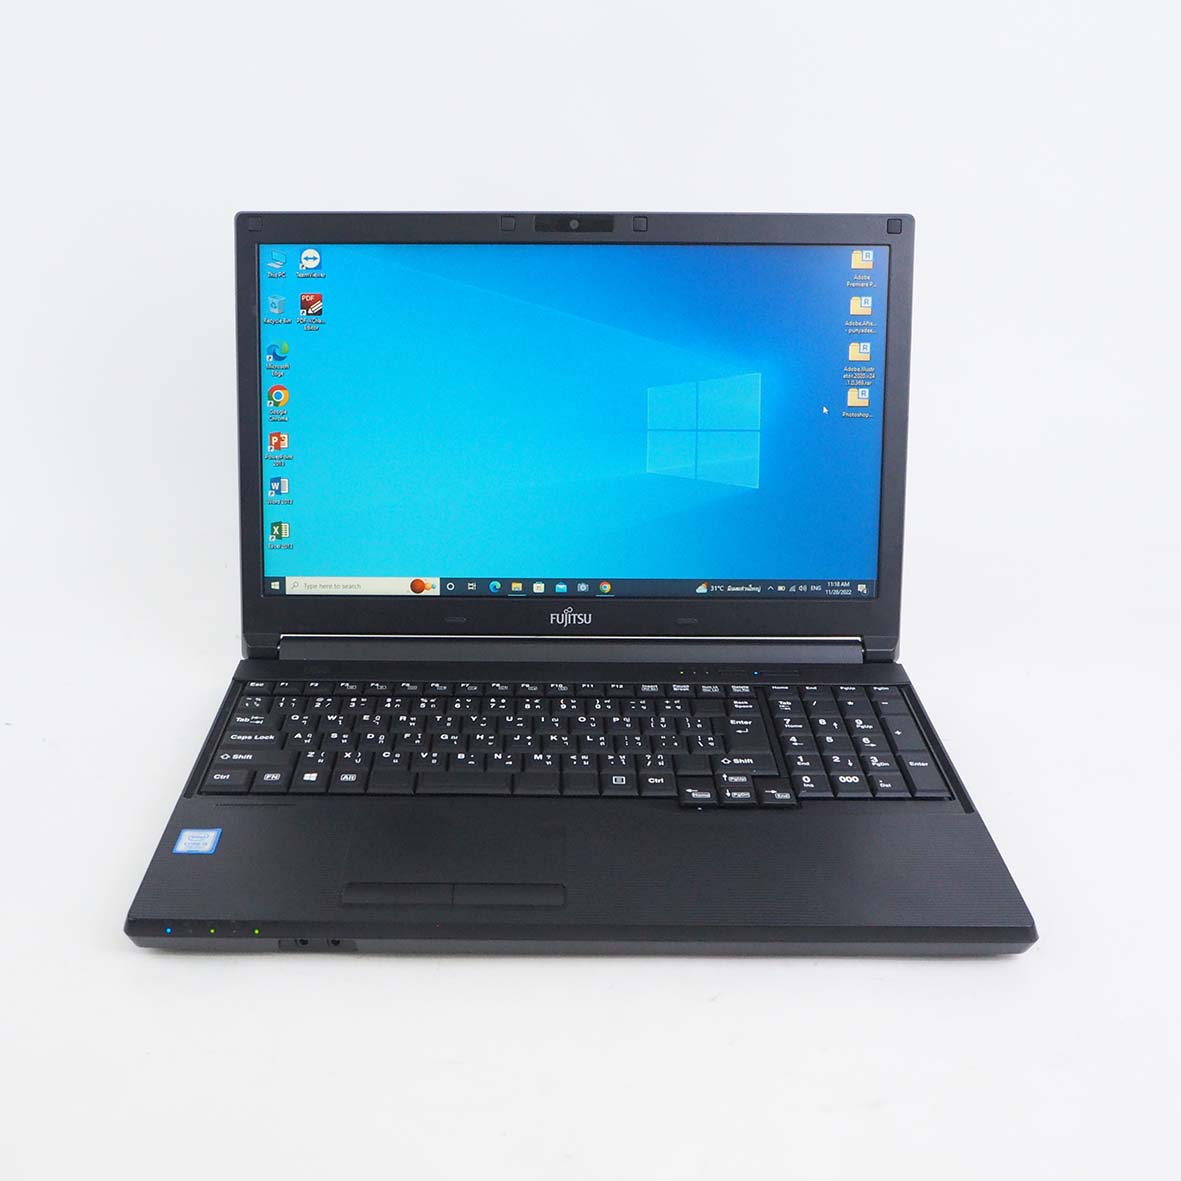 มุมมองเพิ่มเติมของสินค้า โน๊ตบุ๊ค Fu Lifebook A577/S Core i5 Gen 7 RAM 8 SSD 128 GB ขนาด 15.6 นิ้ว คีย์บอร์ดแยก มีกล้องหน้า สเปคแรง เร็ว เล่นเกมได้ Refhed laptop used notebook มีประกัน by Totalsol